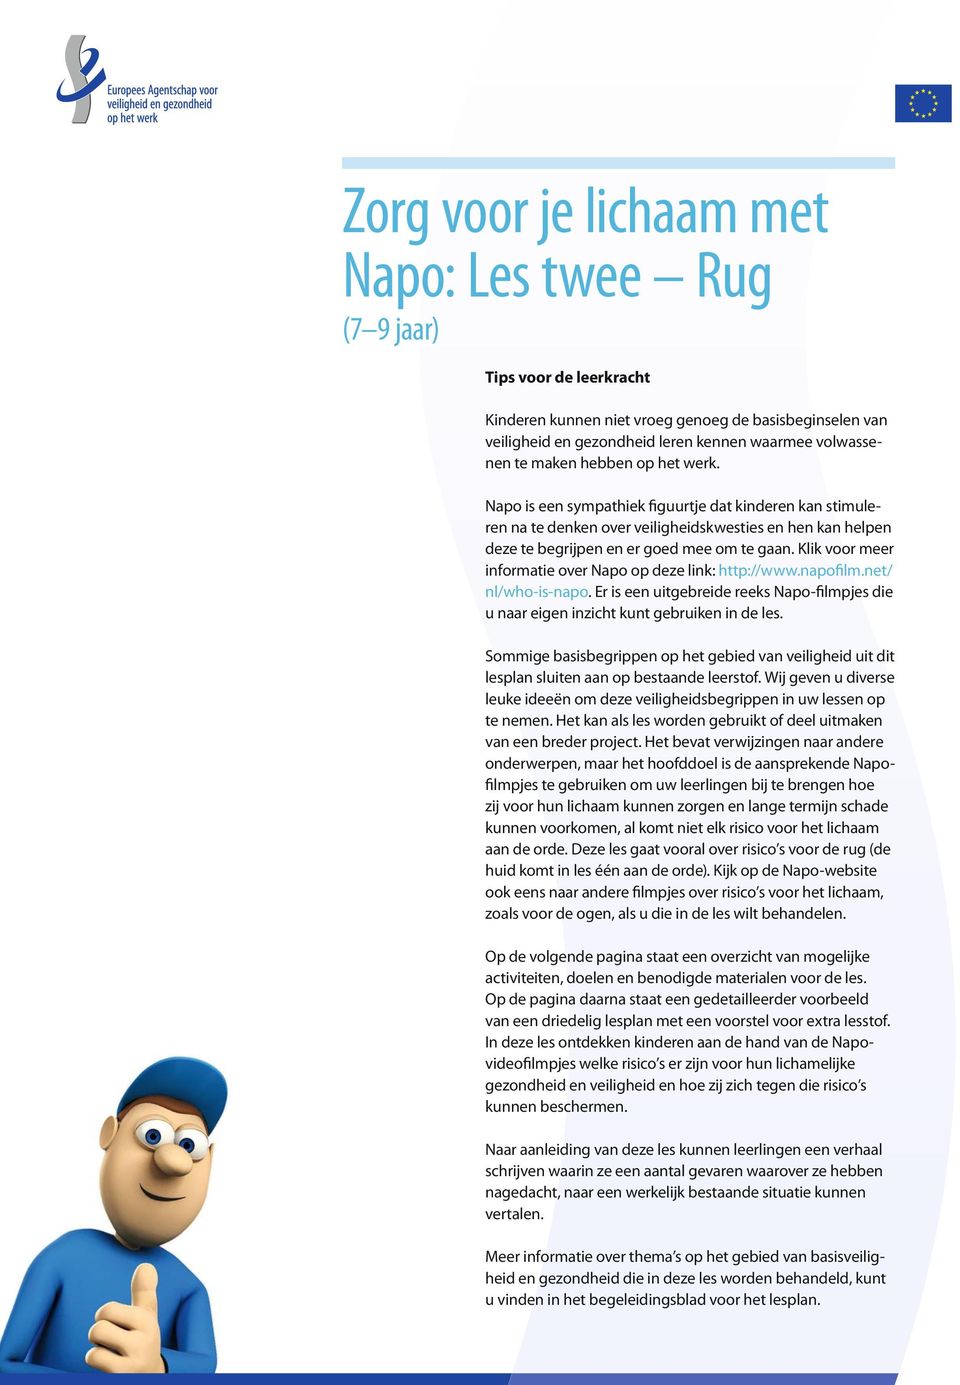 Klik voor meer informatie over Napo op deze link: http://www.napofilm.net/ nl/who-is-napo. Er is een uitgebreide reeks Napo-filmpjes die u naar eigen inzicht kunt gebruiken in de les.